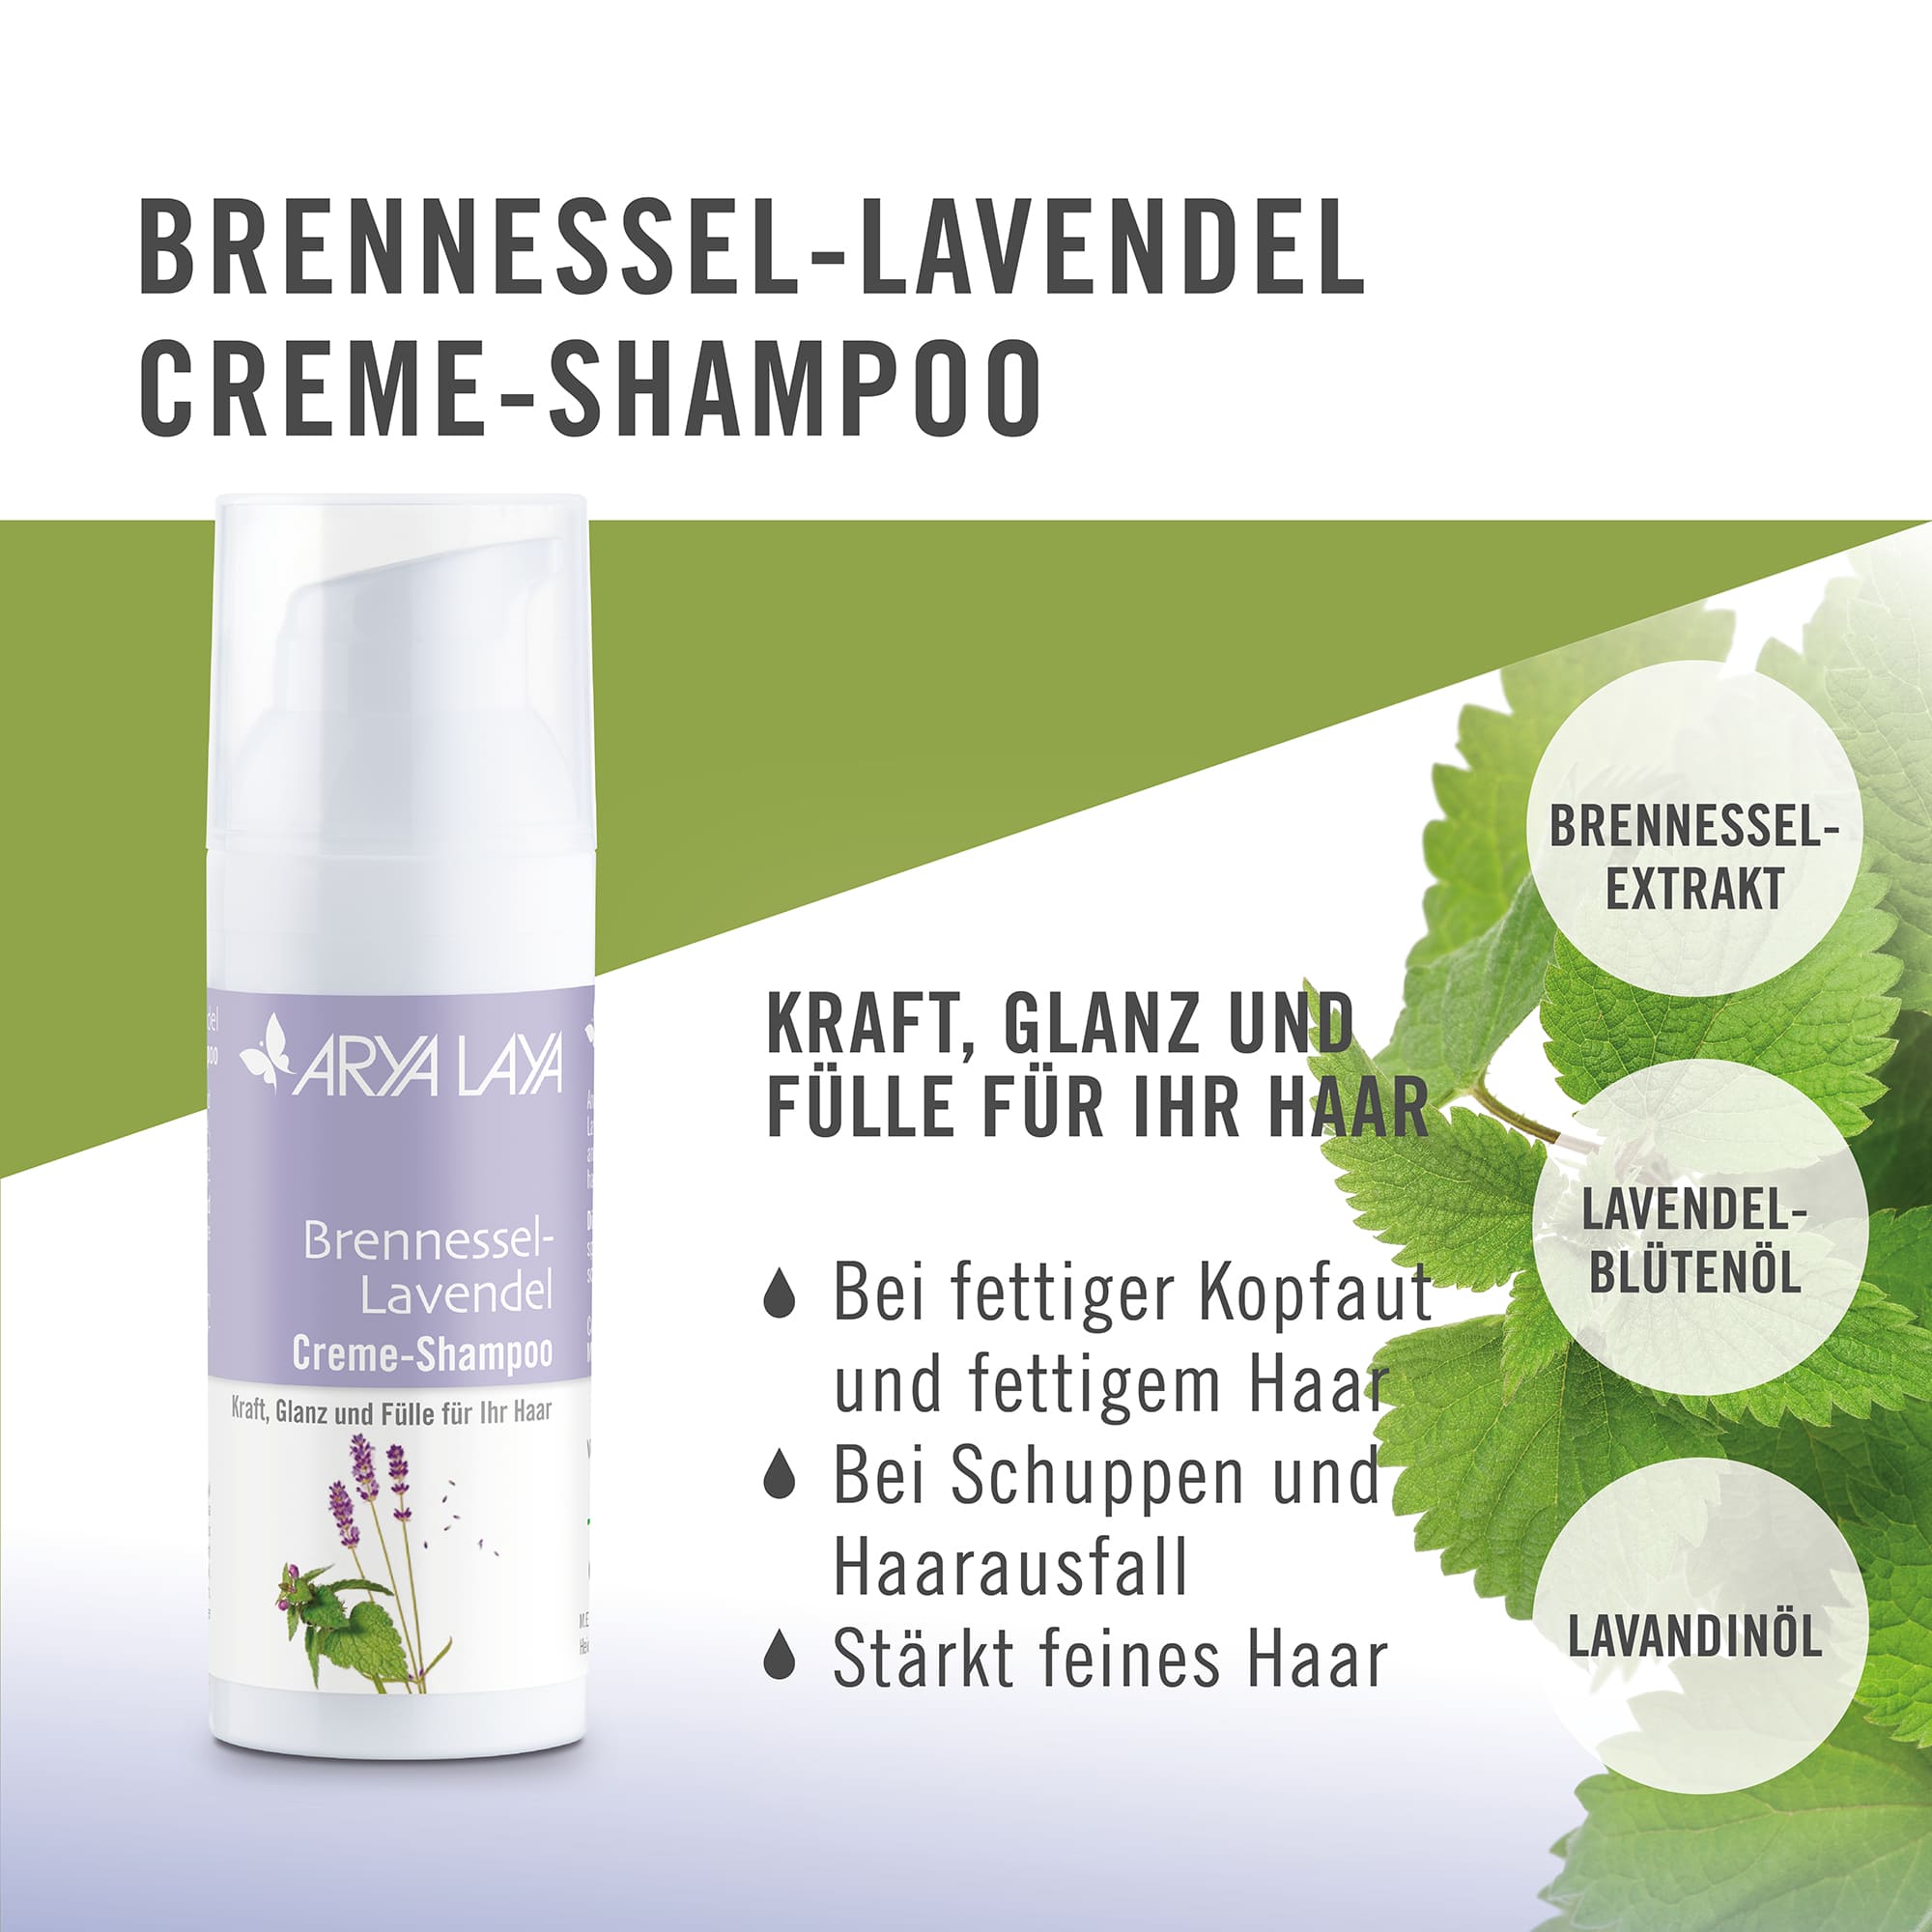 Wirkweise ARYA LAYA Brennessel-Lavendel Creme-Shampoo